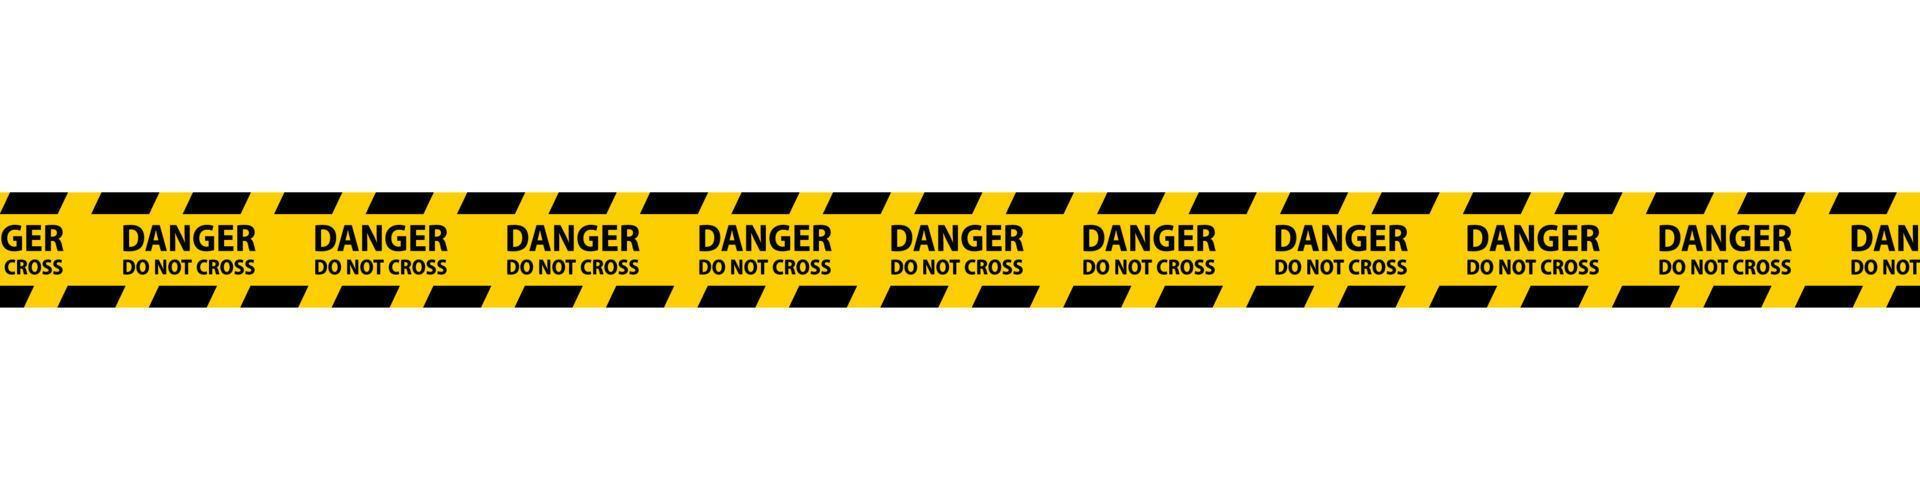 cintas transparentes de peligro, precaución y advertencia. vector